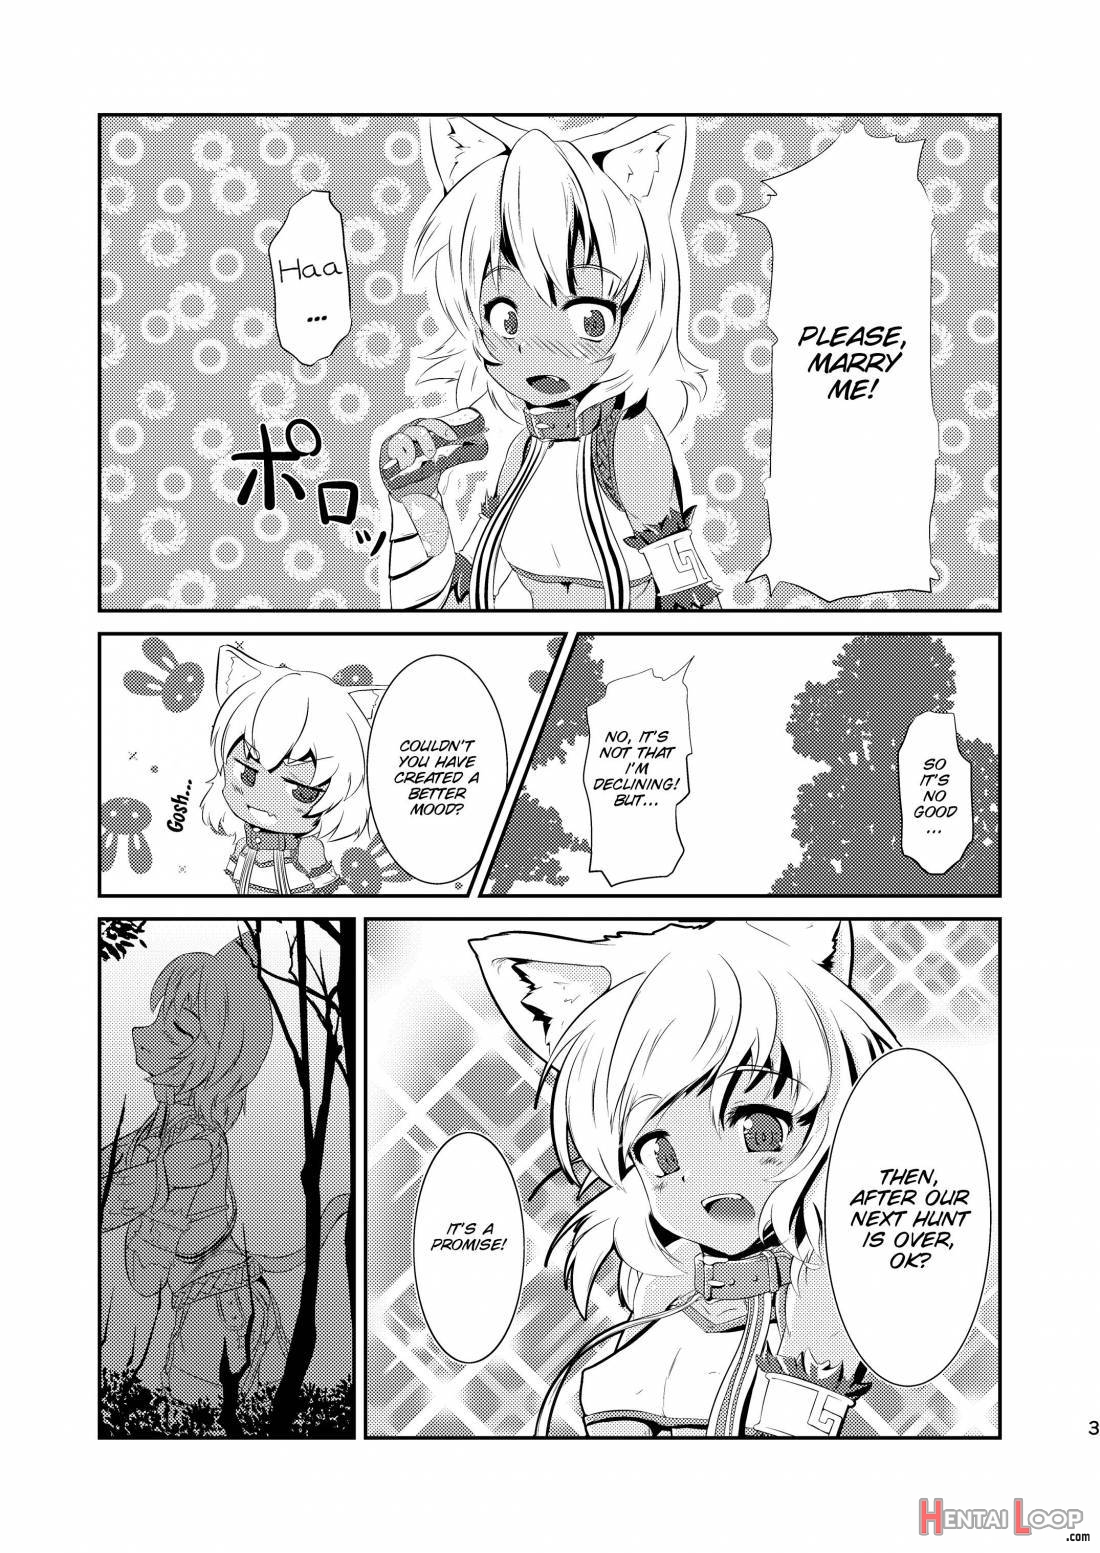 Daniku No Nukarumi page 2